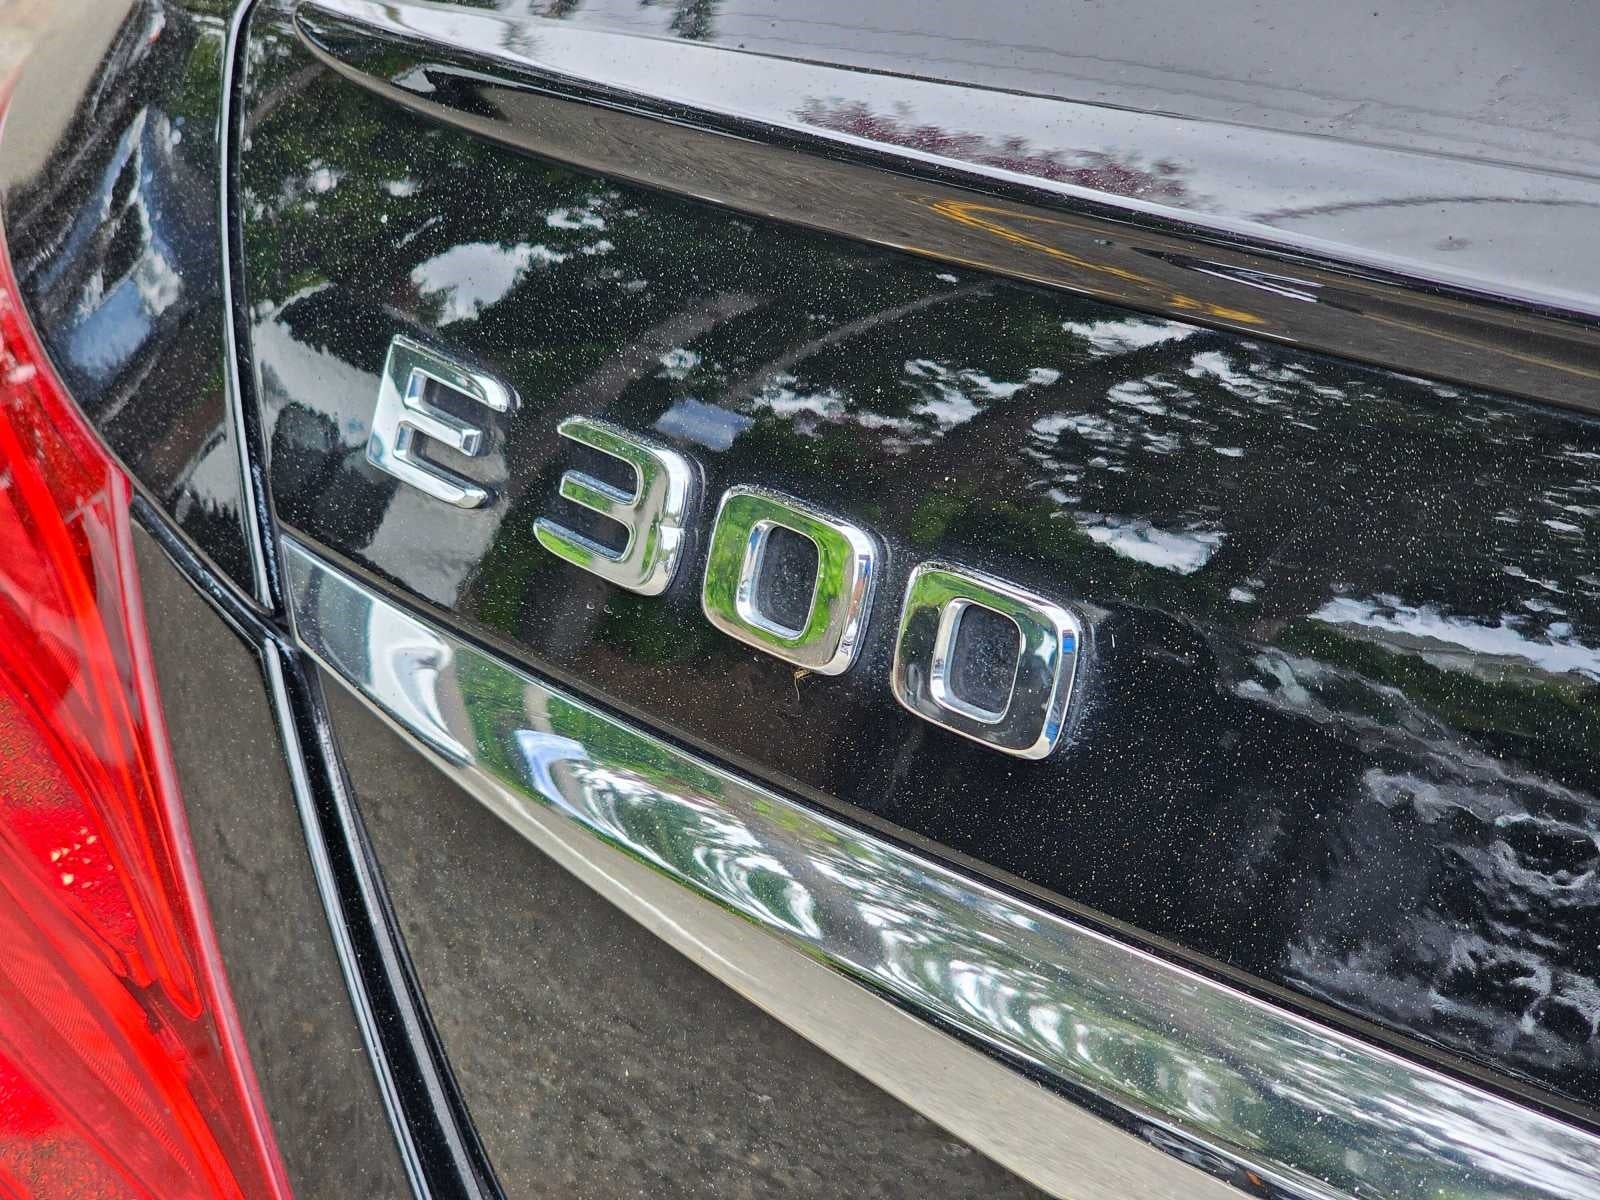 2019 Mercedes-Benz E-Class E 300